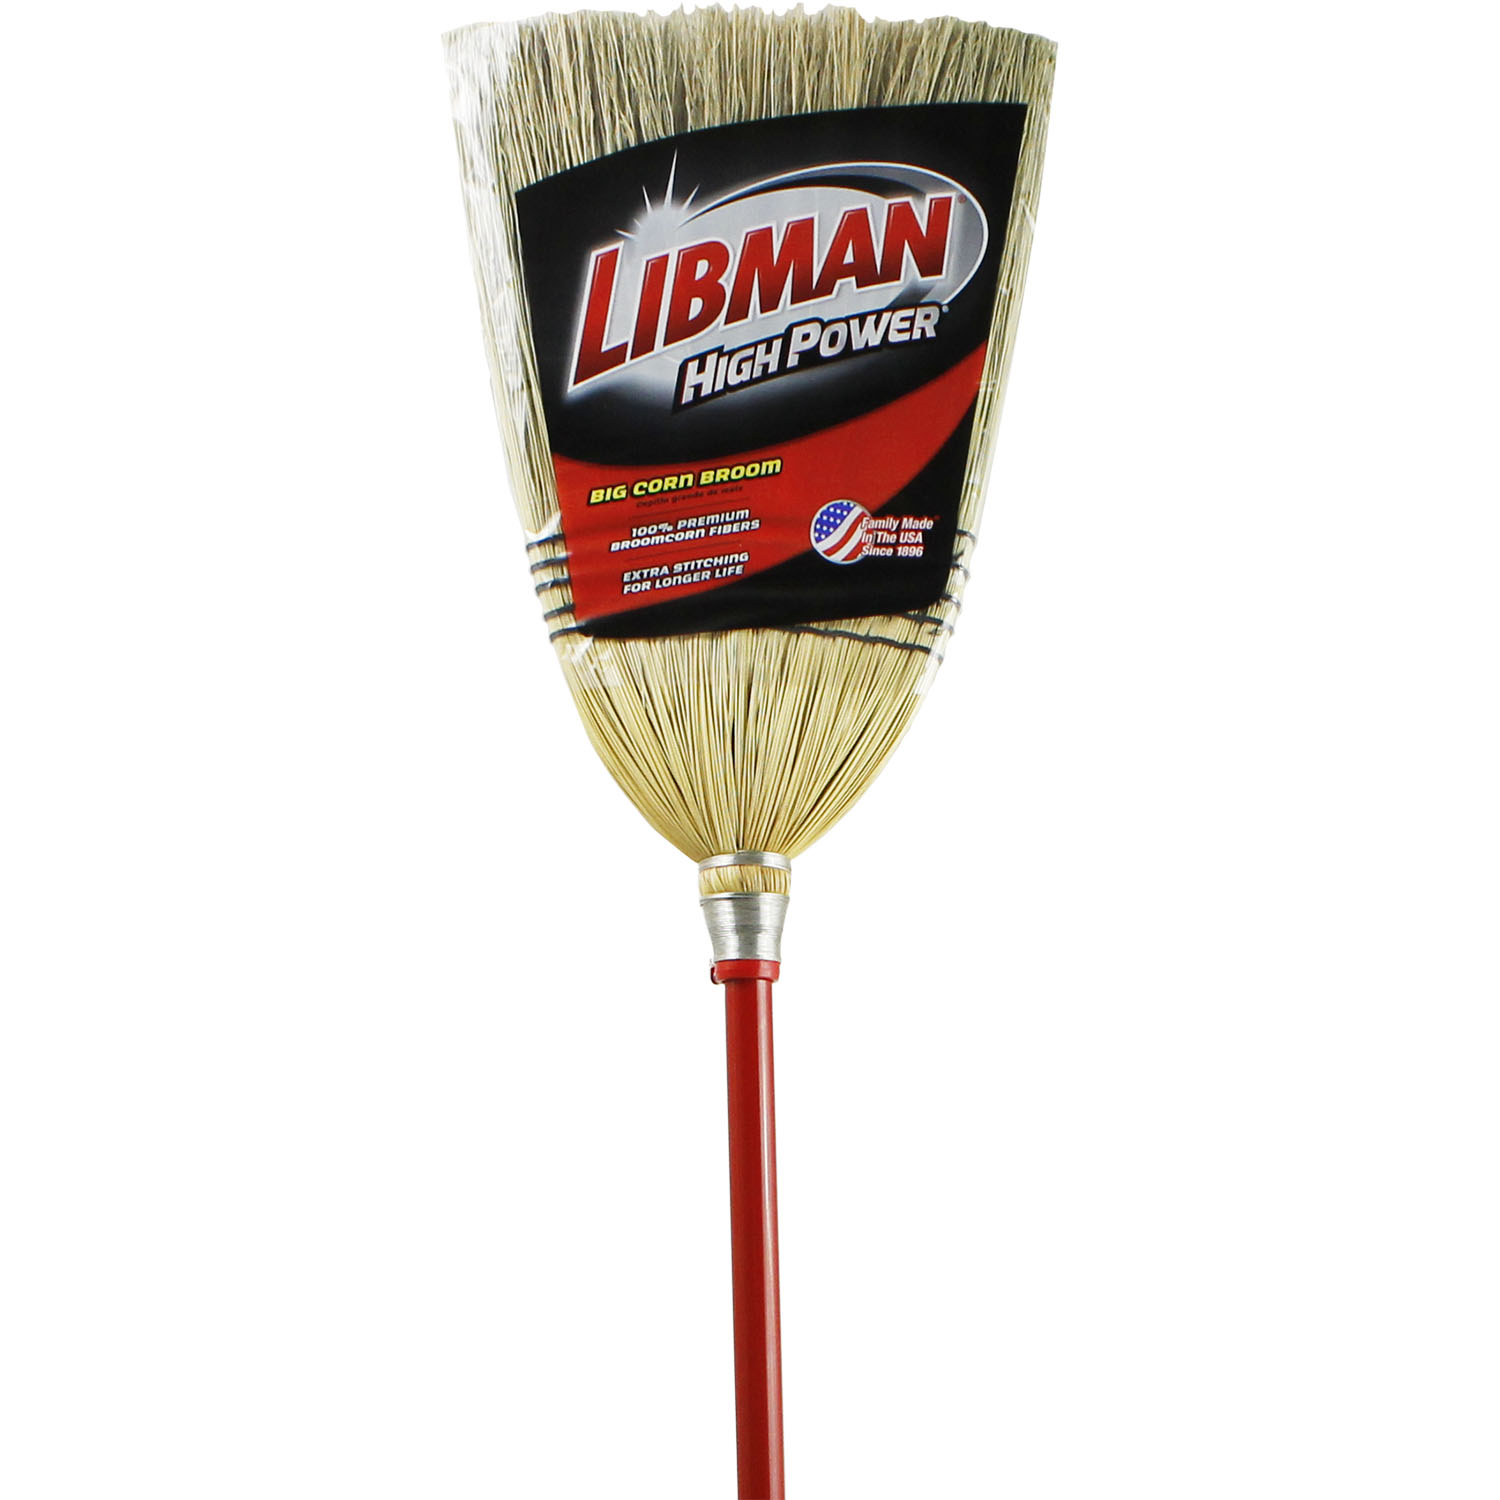 Libman 502 57 Janitor Corn Broom Walmart Walmart